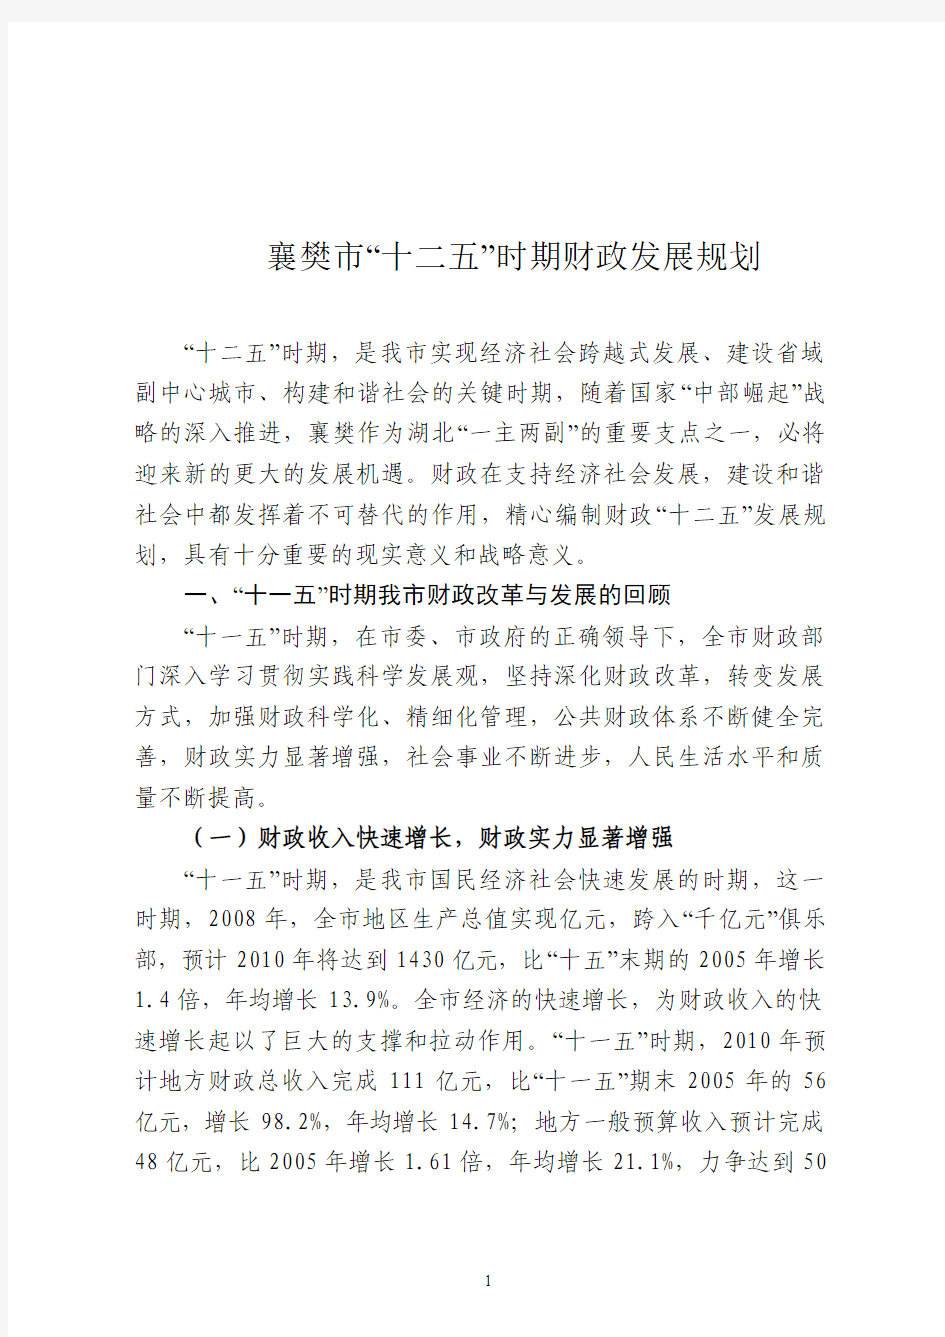 襄樊市“十二五”时期财政发展规划